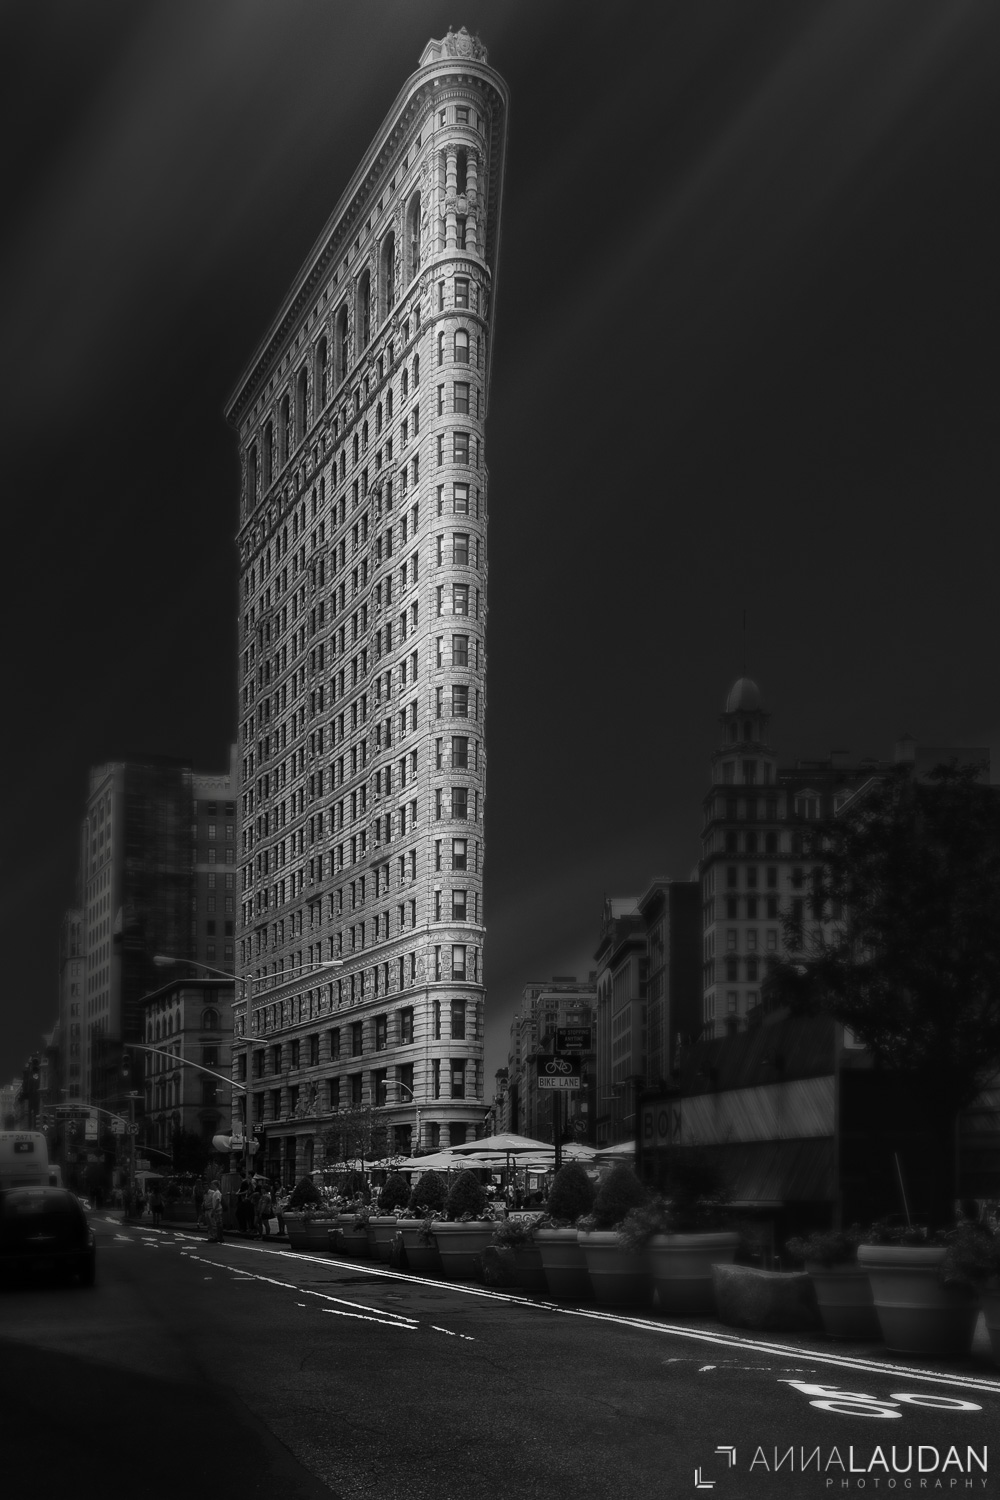 Schwarz-weiß Interpretation des Flatiraon Gebäudes in New York